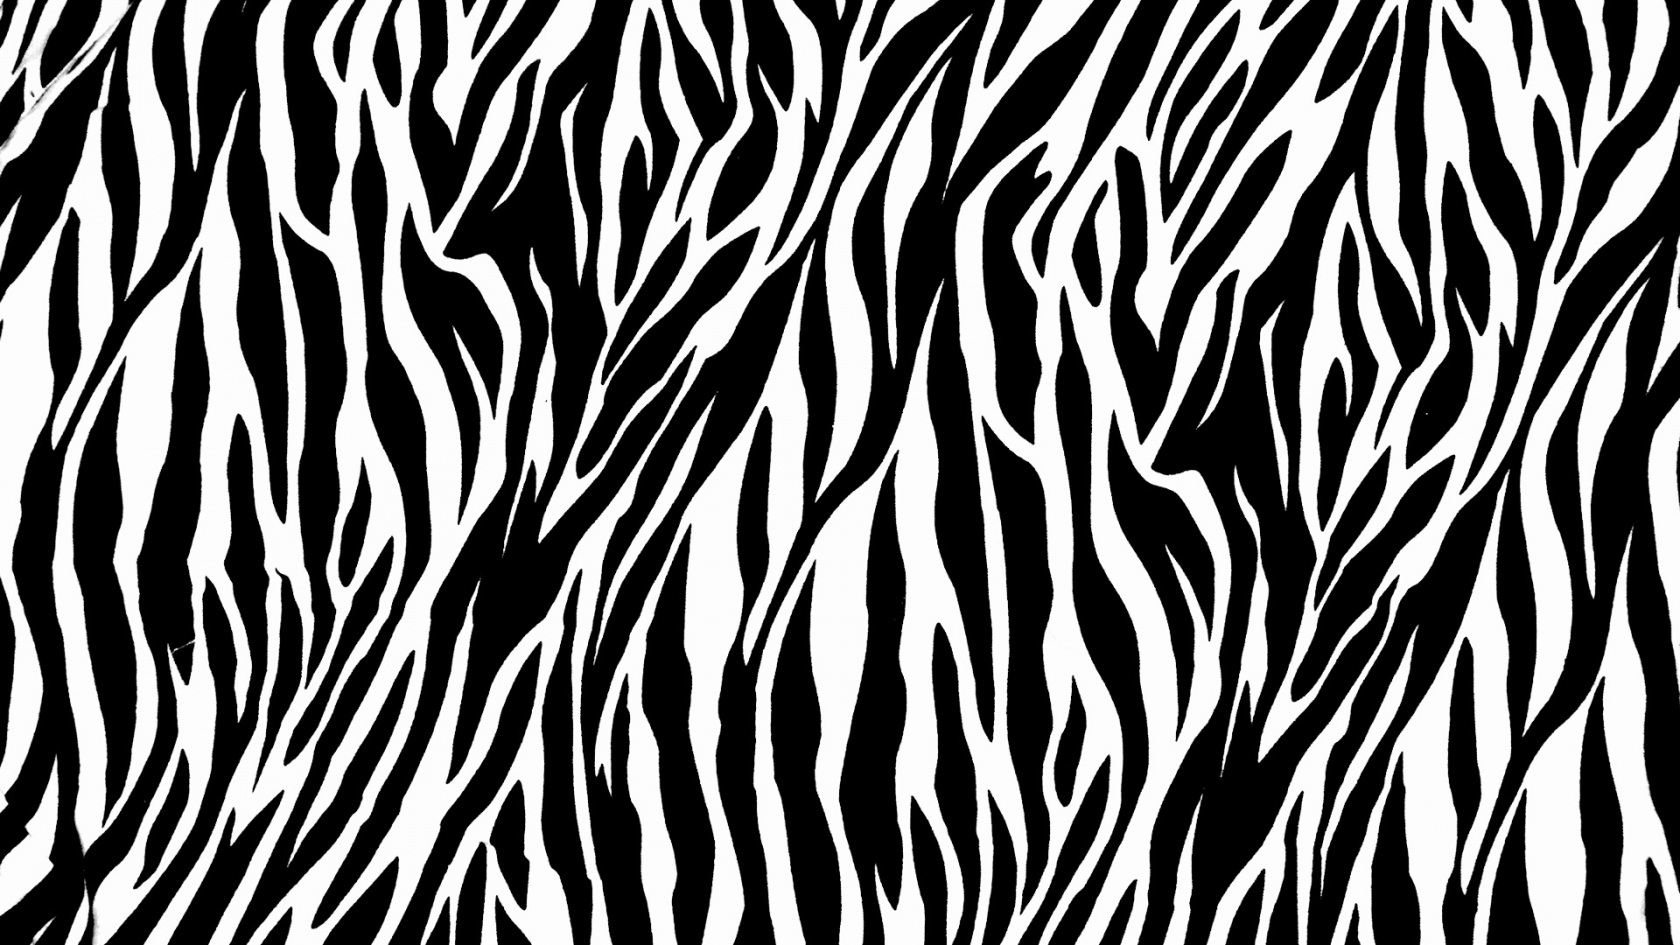 Zebra Print for 1680 x 945 HDTV resolution